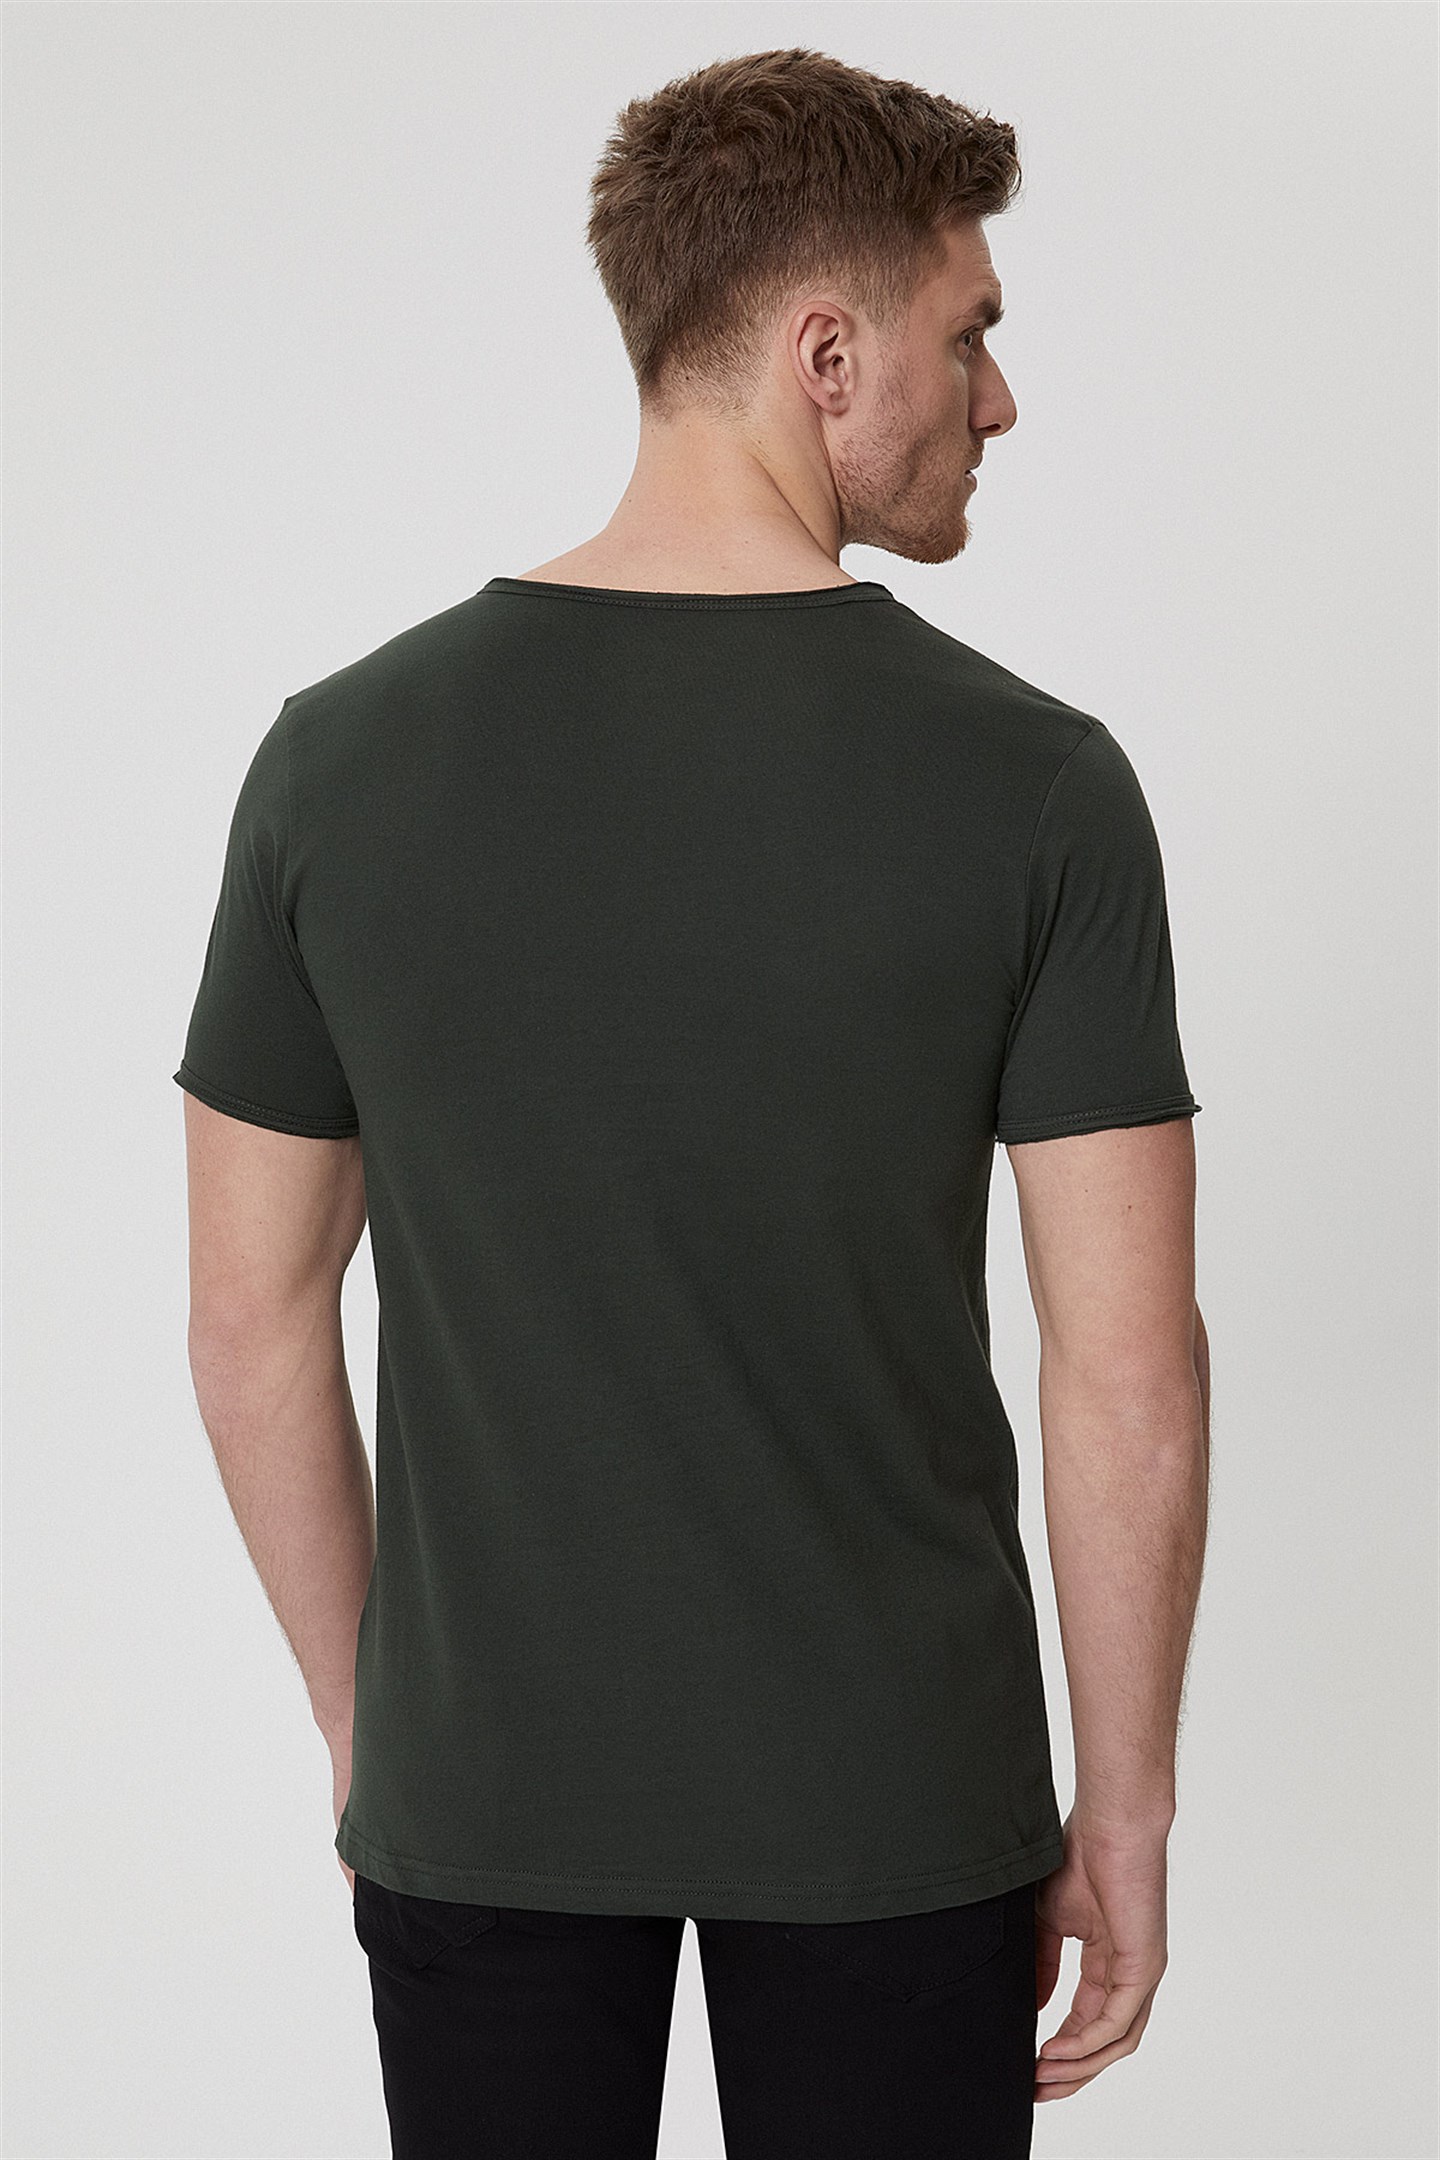 Lee Cooper Target Erkek V Yaka Patlı T-Shirt Koyu Yeşil. 4